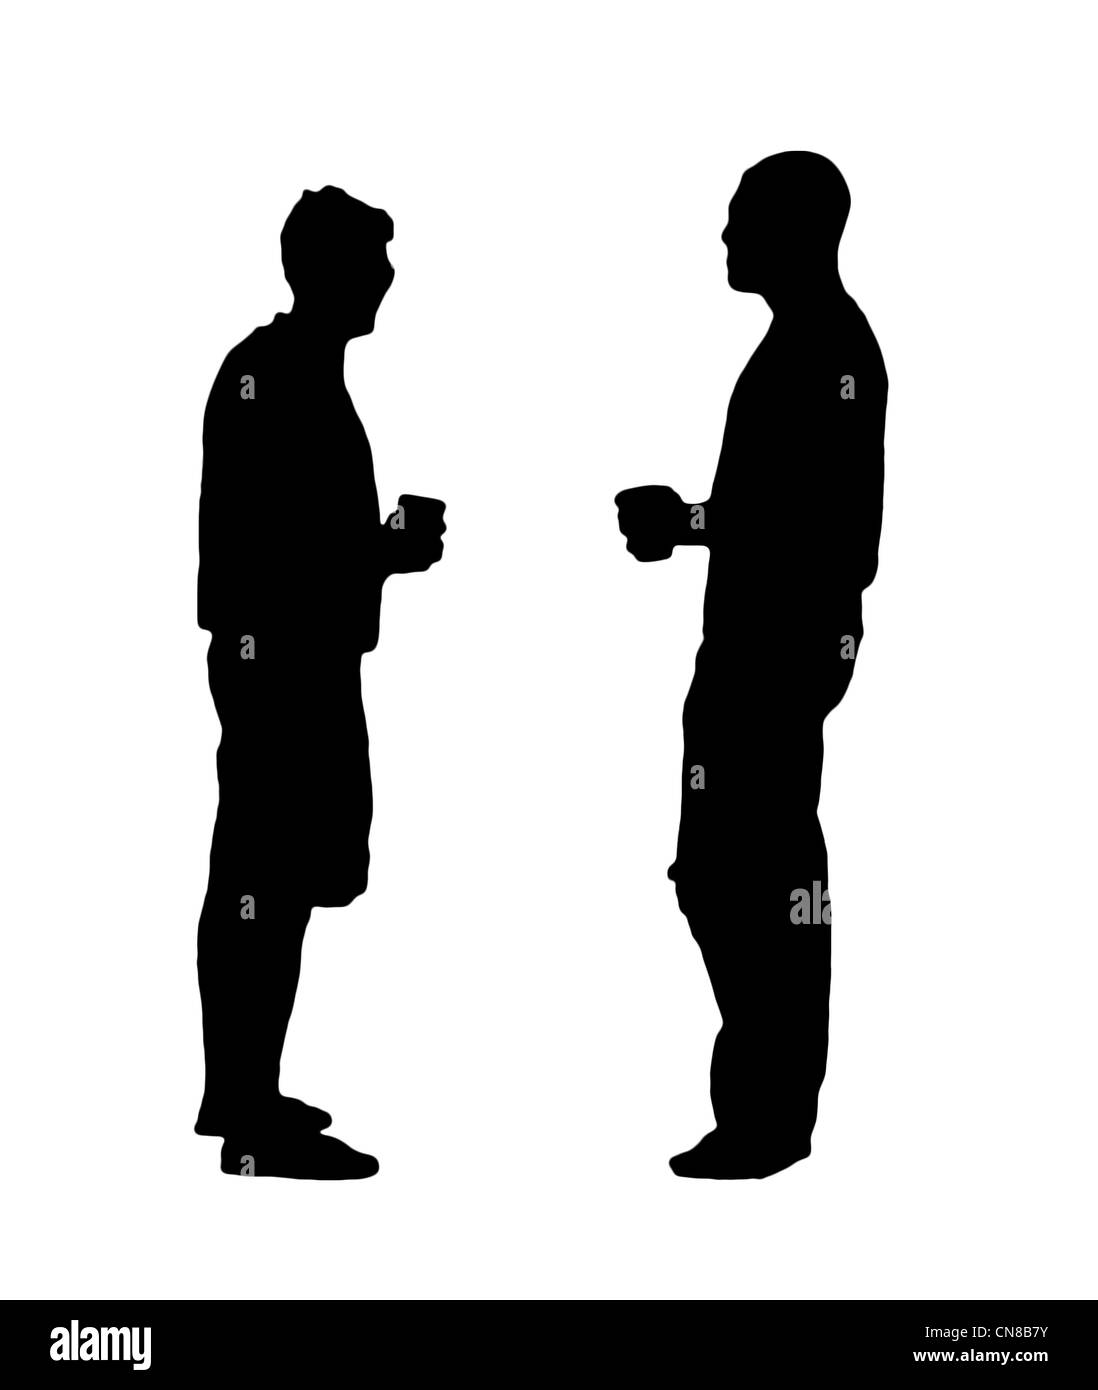 Eine schwarze und weiße Silhouette zweier Männer, die Bier trinken. Stockfoto